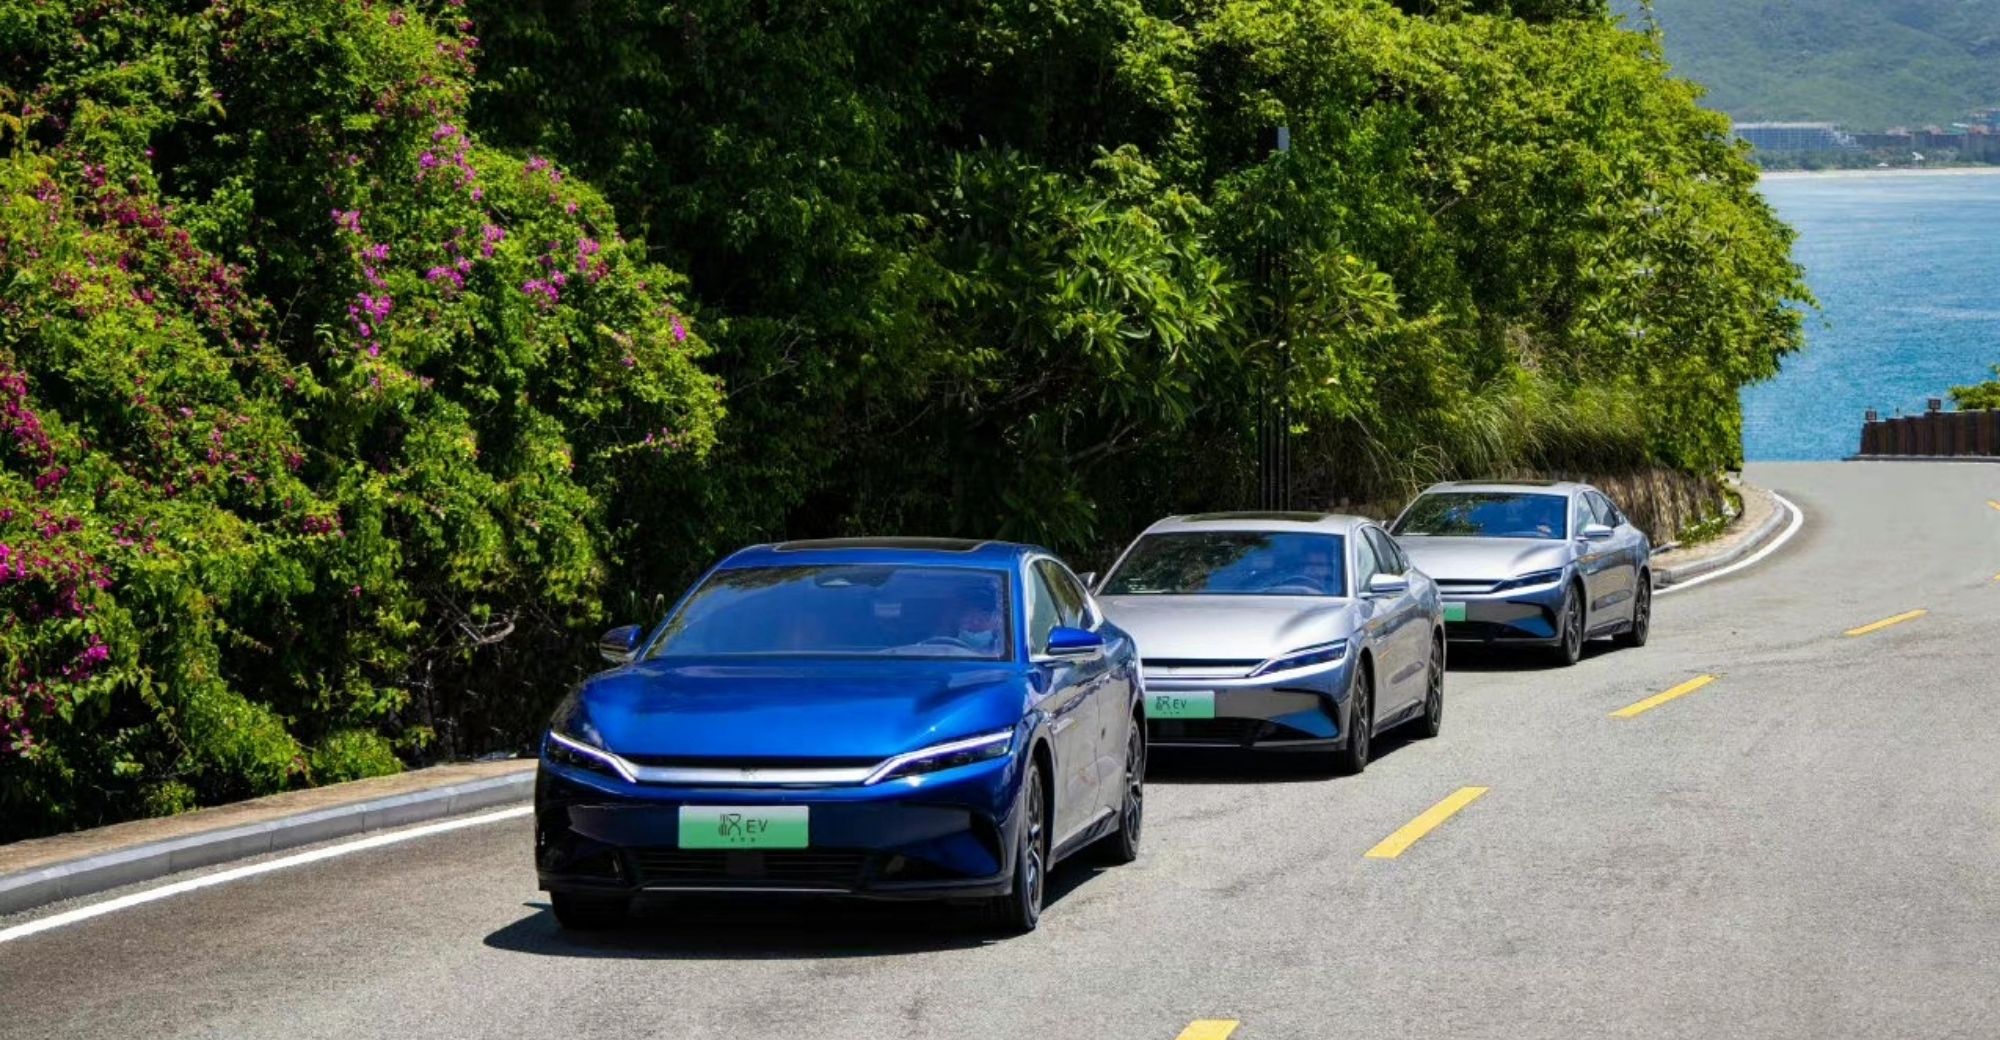 BYD Surpasses Tesla to Rank Top in Global EV Sales in H1